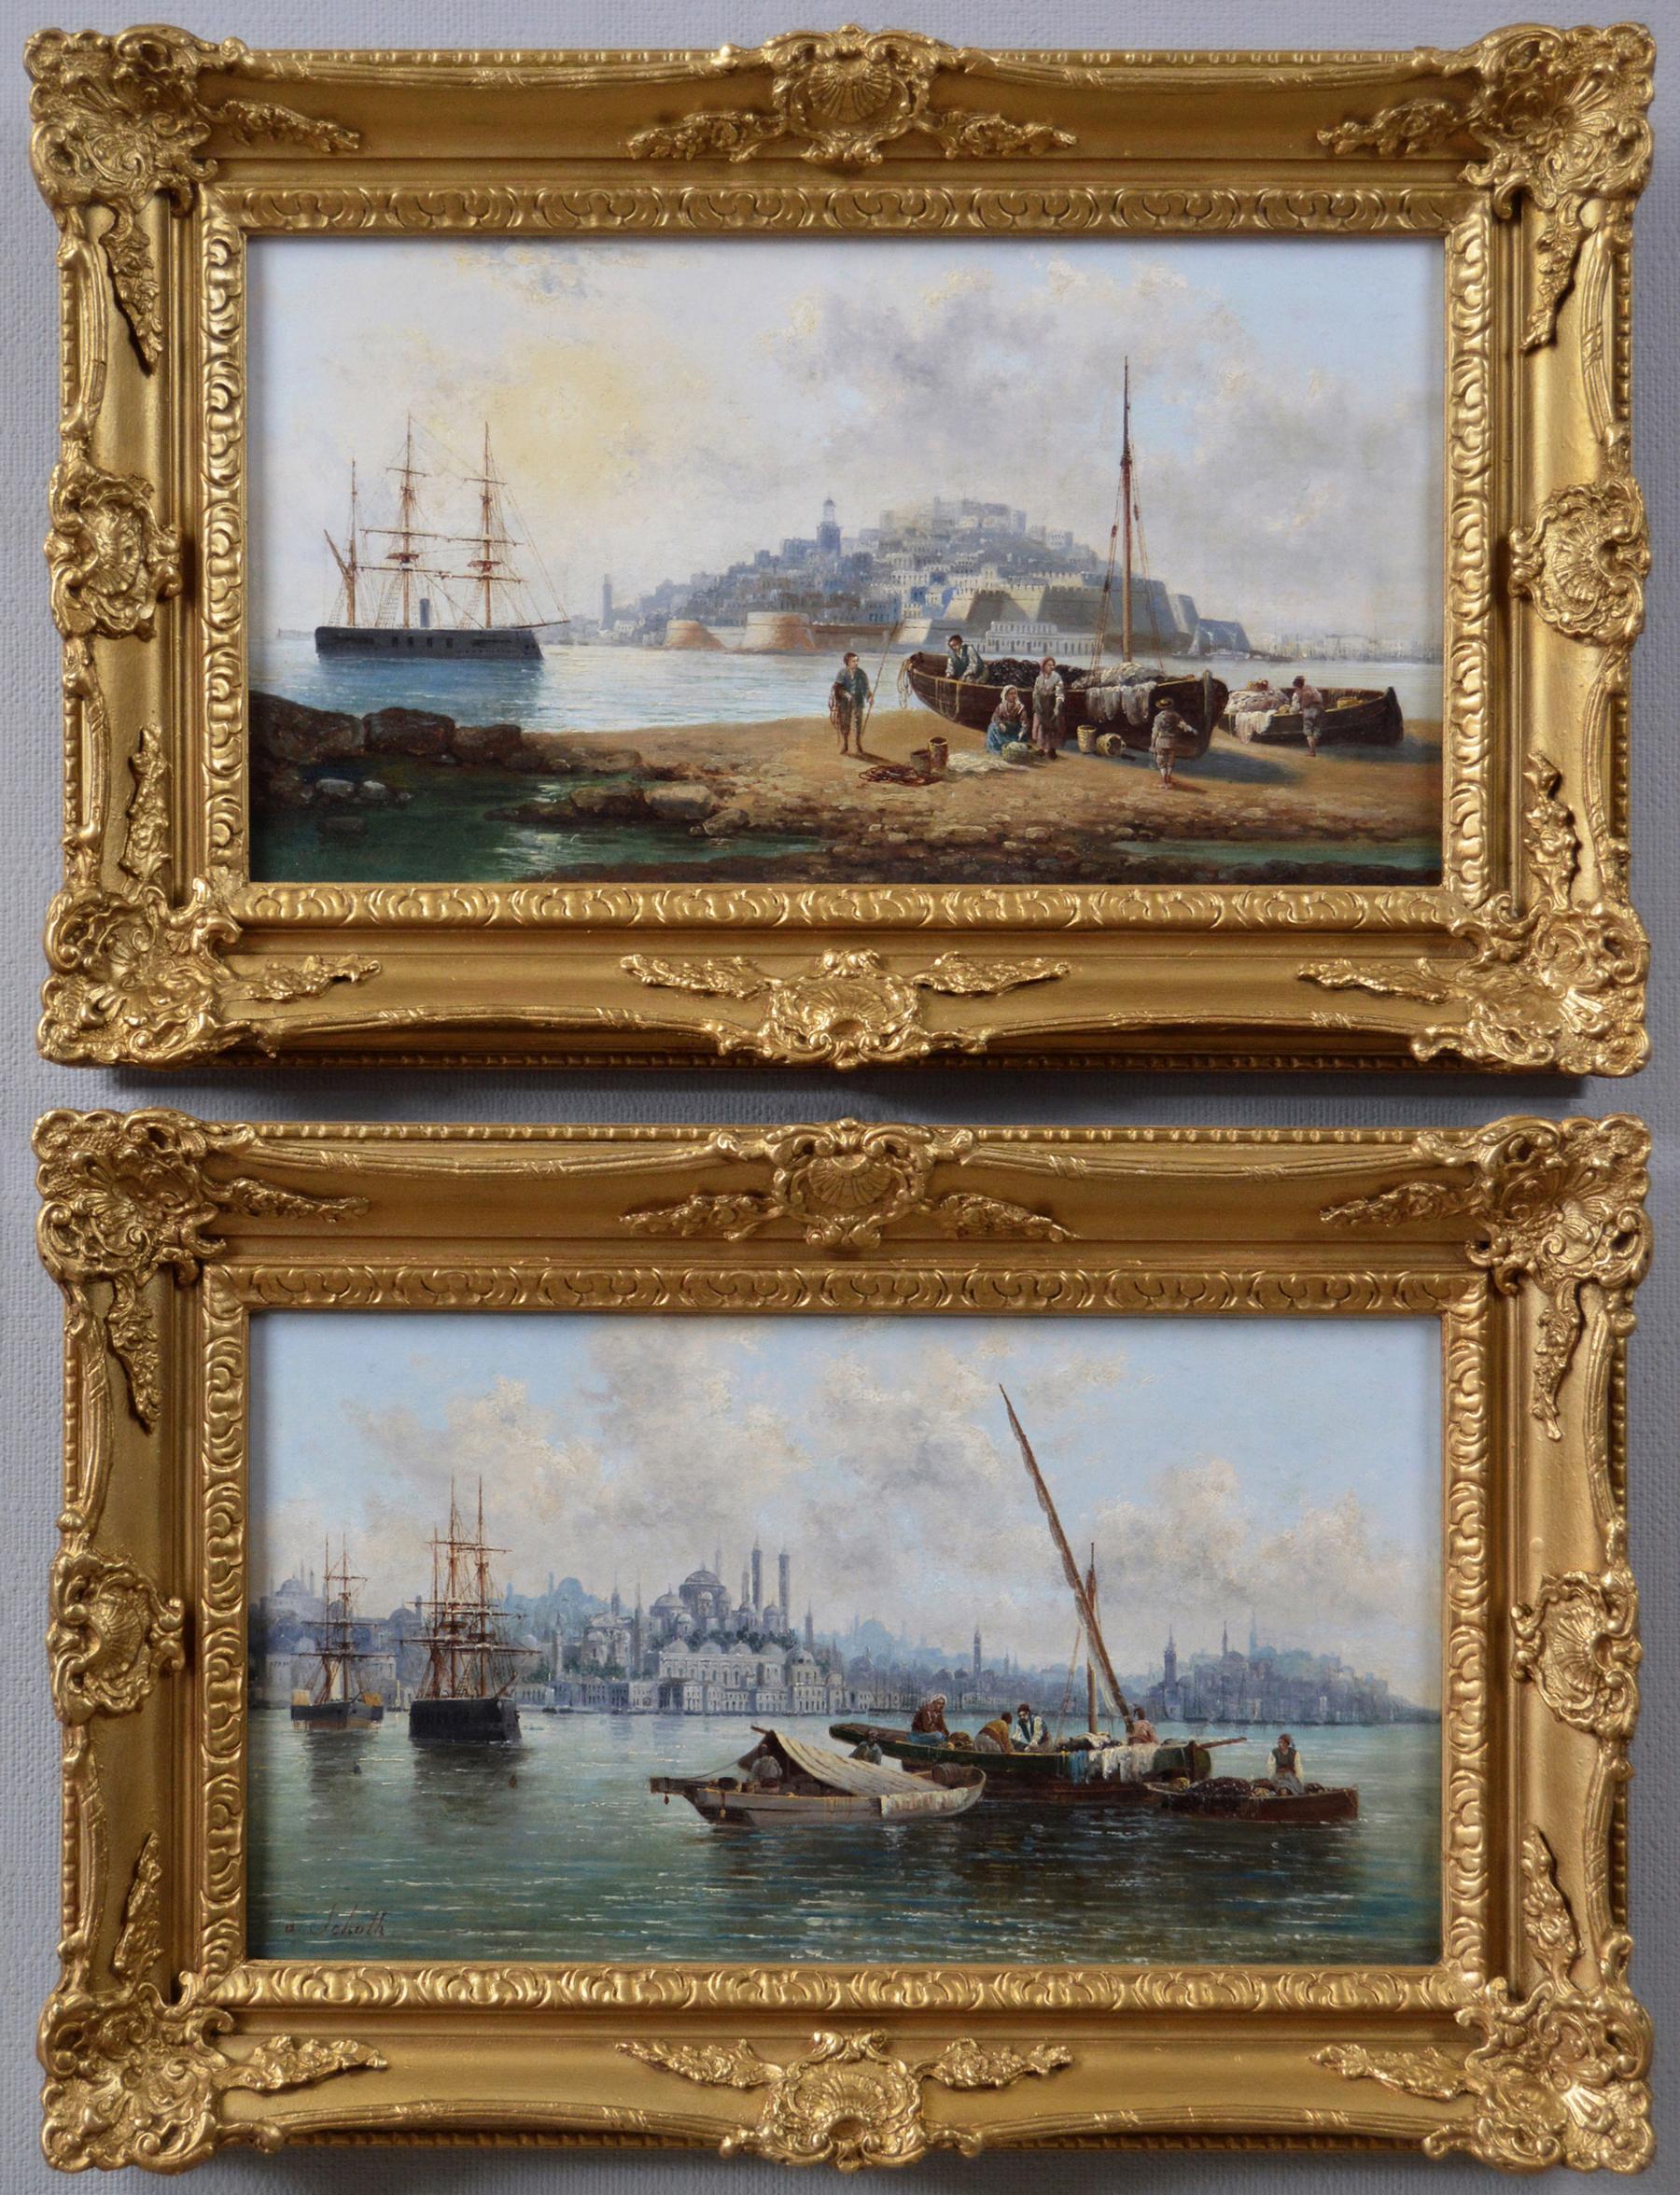 Anton Schoth Landscape Painting – Paar Meereslandschaften-Ölgemälde aus dem 19. Jahrhundert von Malta und Konstantinopel (Istanbul)